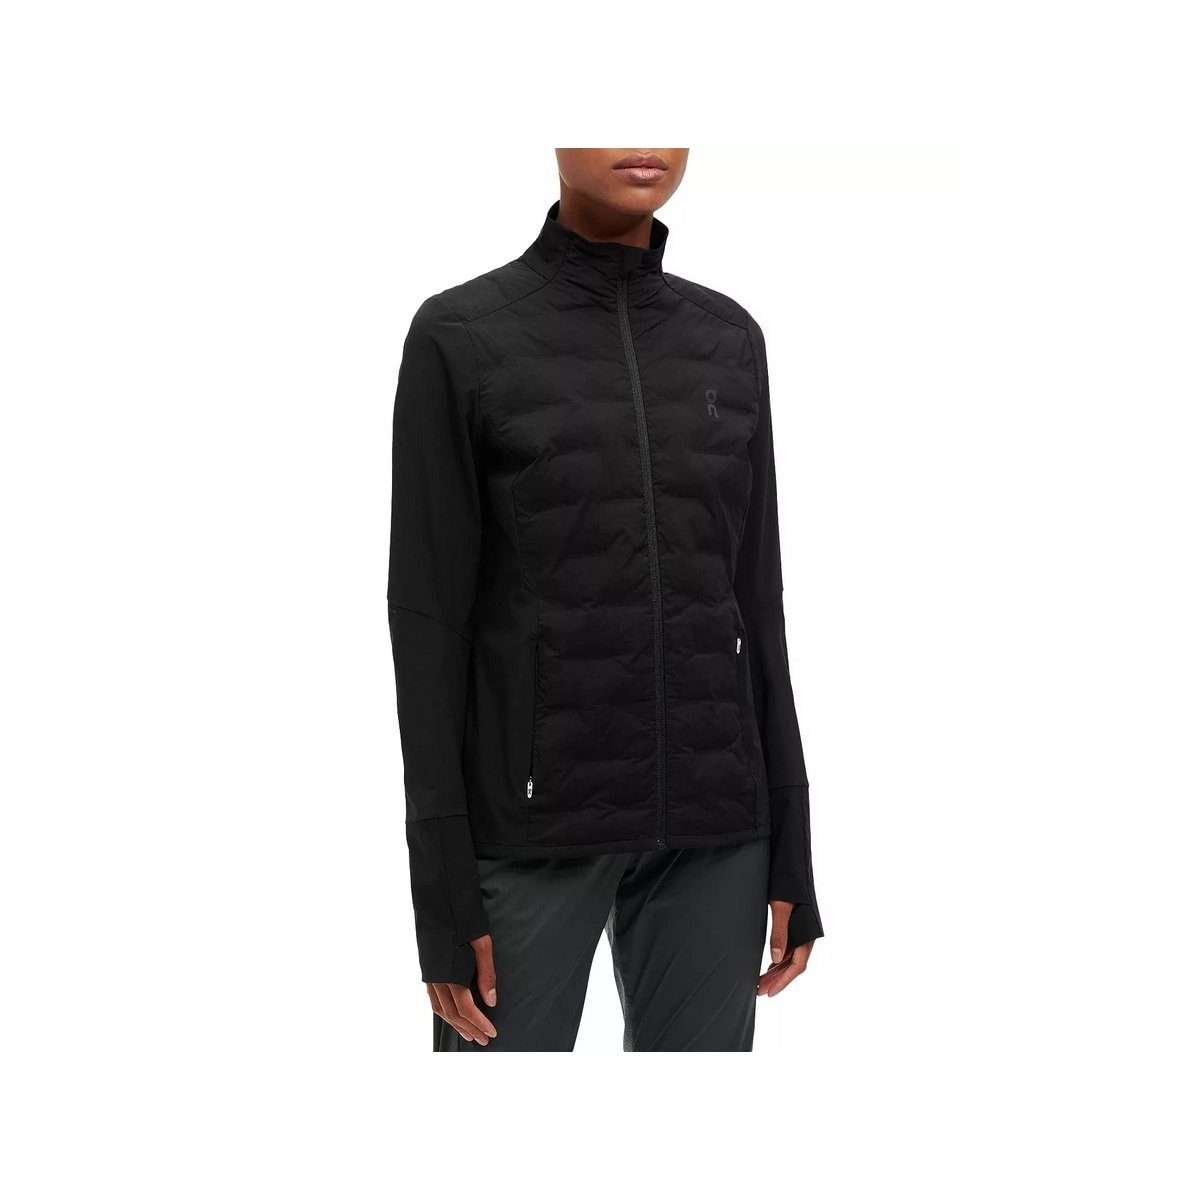 Функциональная куртка 3-в-1 черная (1 шт.)